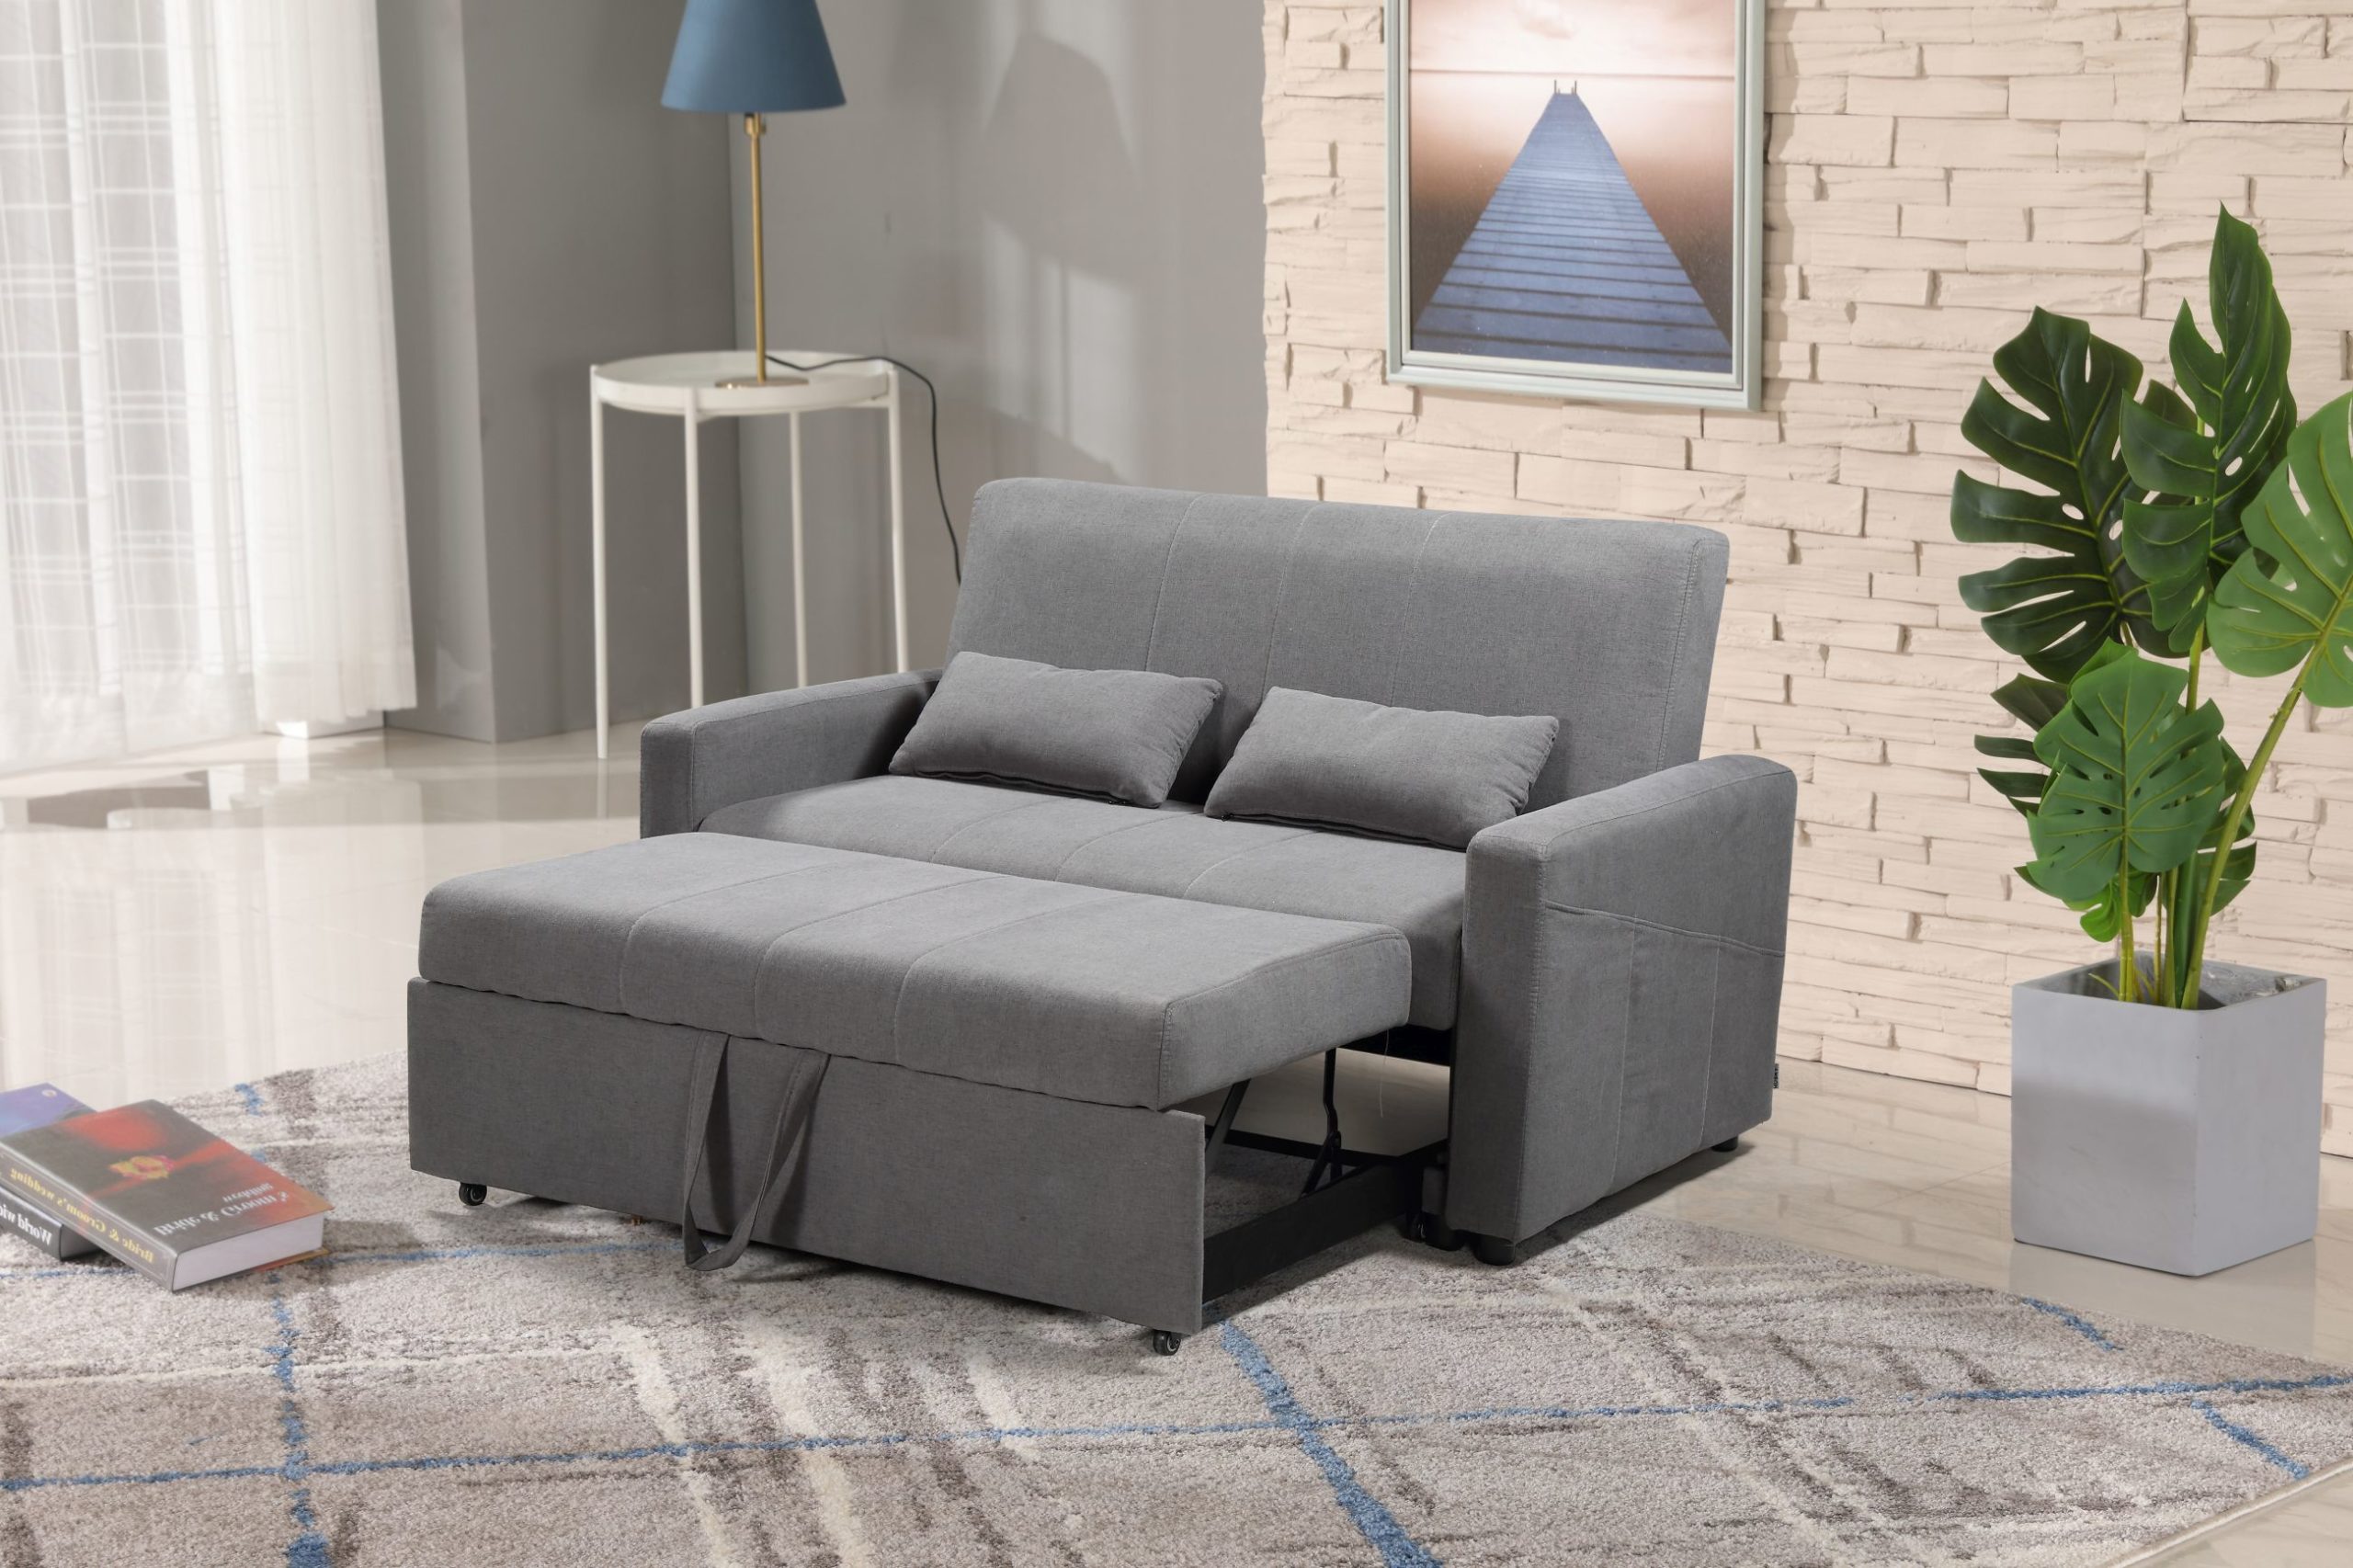 convertible configurable lounger sofa bed